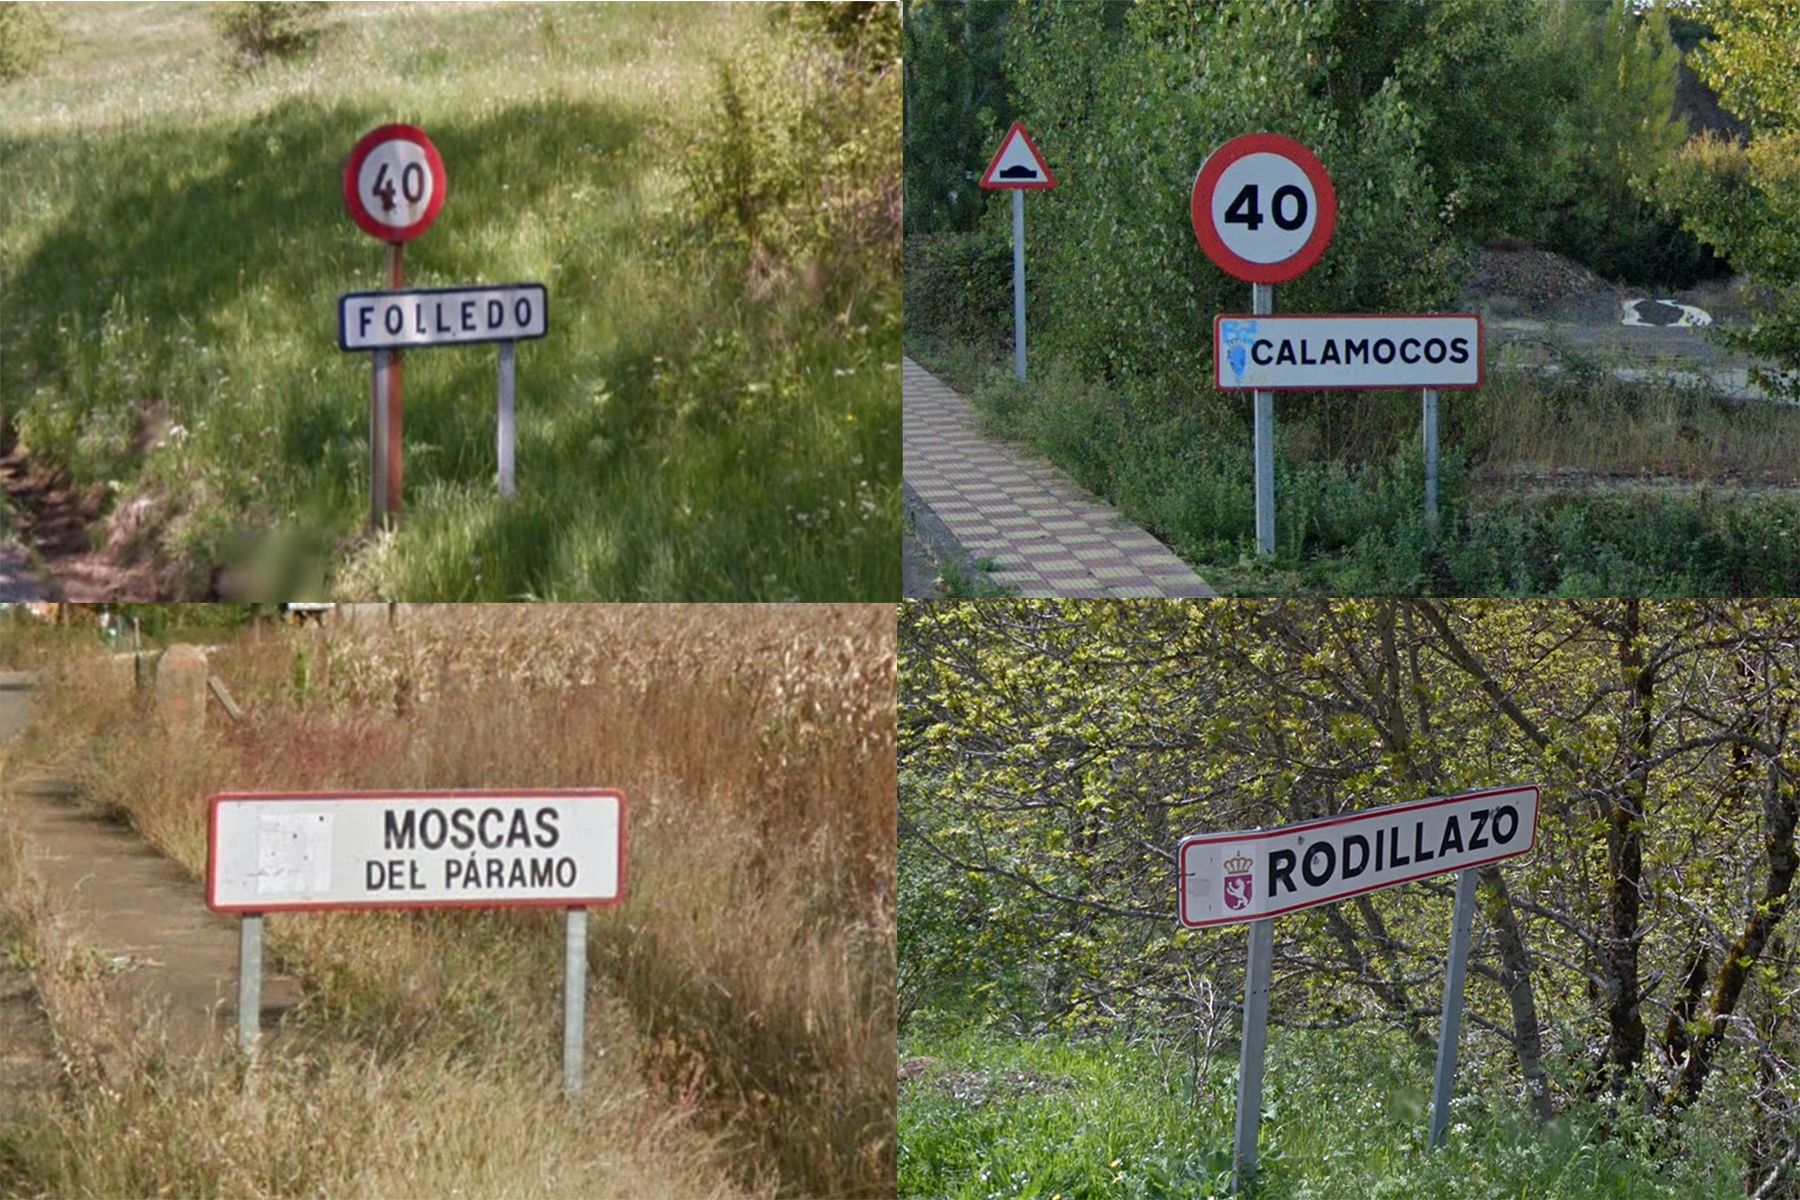 Recopilación de los nombres de pueblos más peculiares de la provincia de León